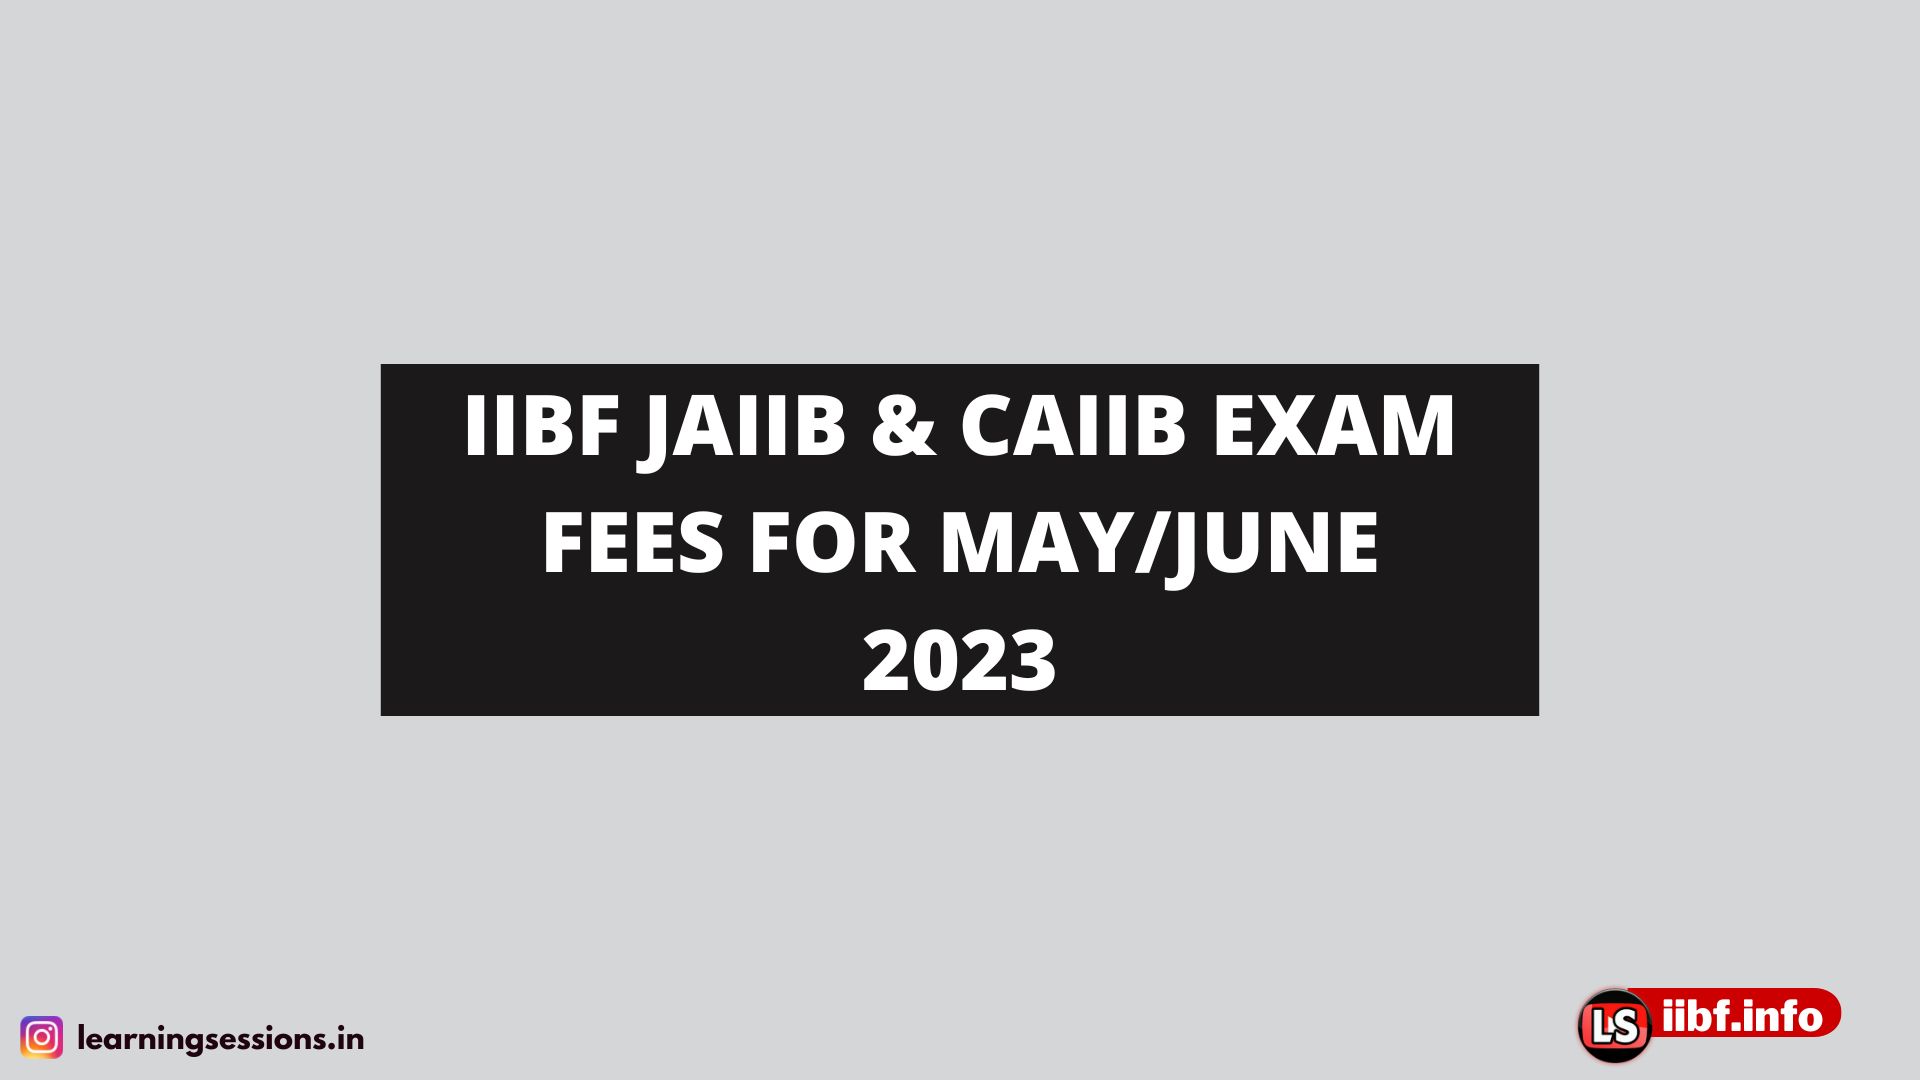 IIBF JAIIB & CAIIB EXAM FEES FOR MAY/JUNE 2023